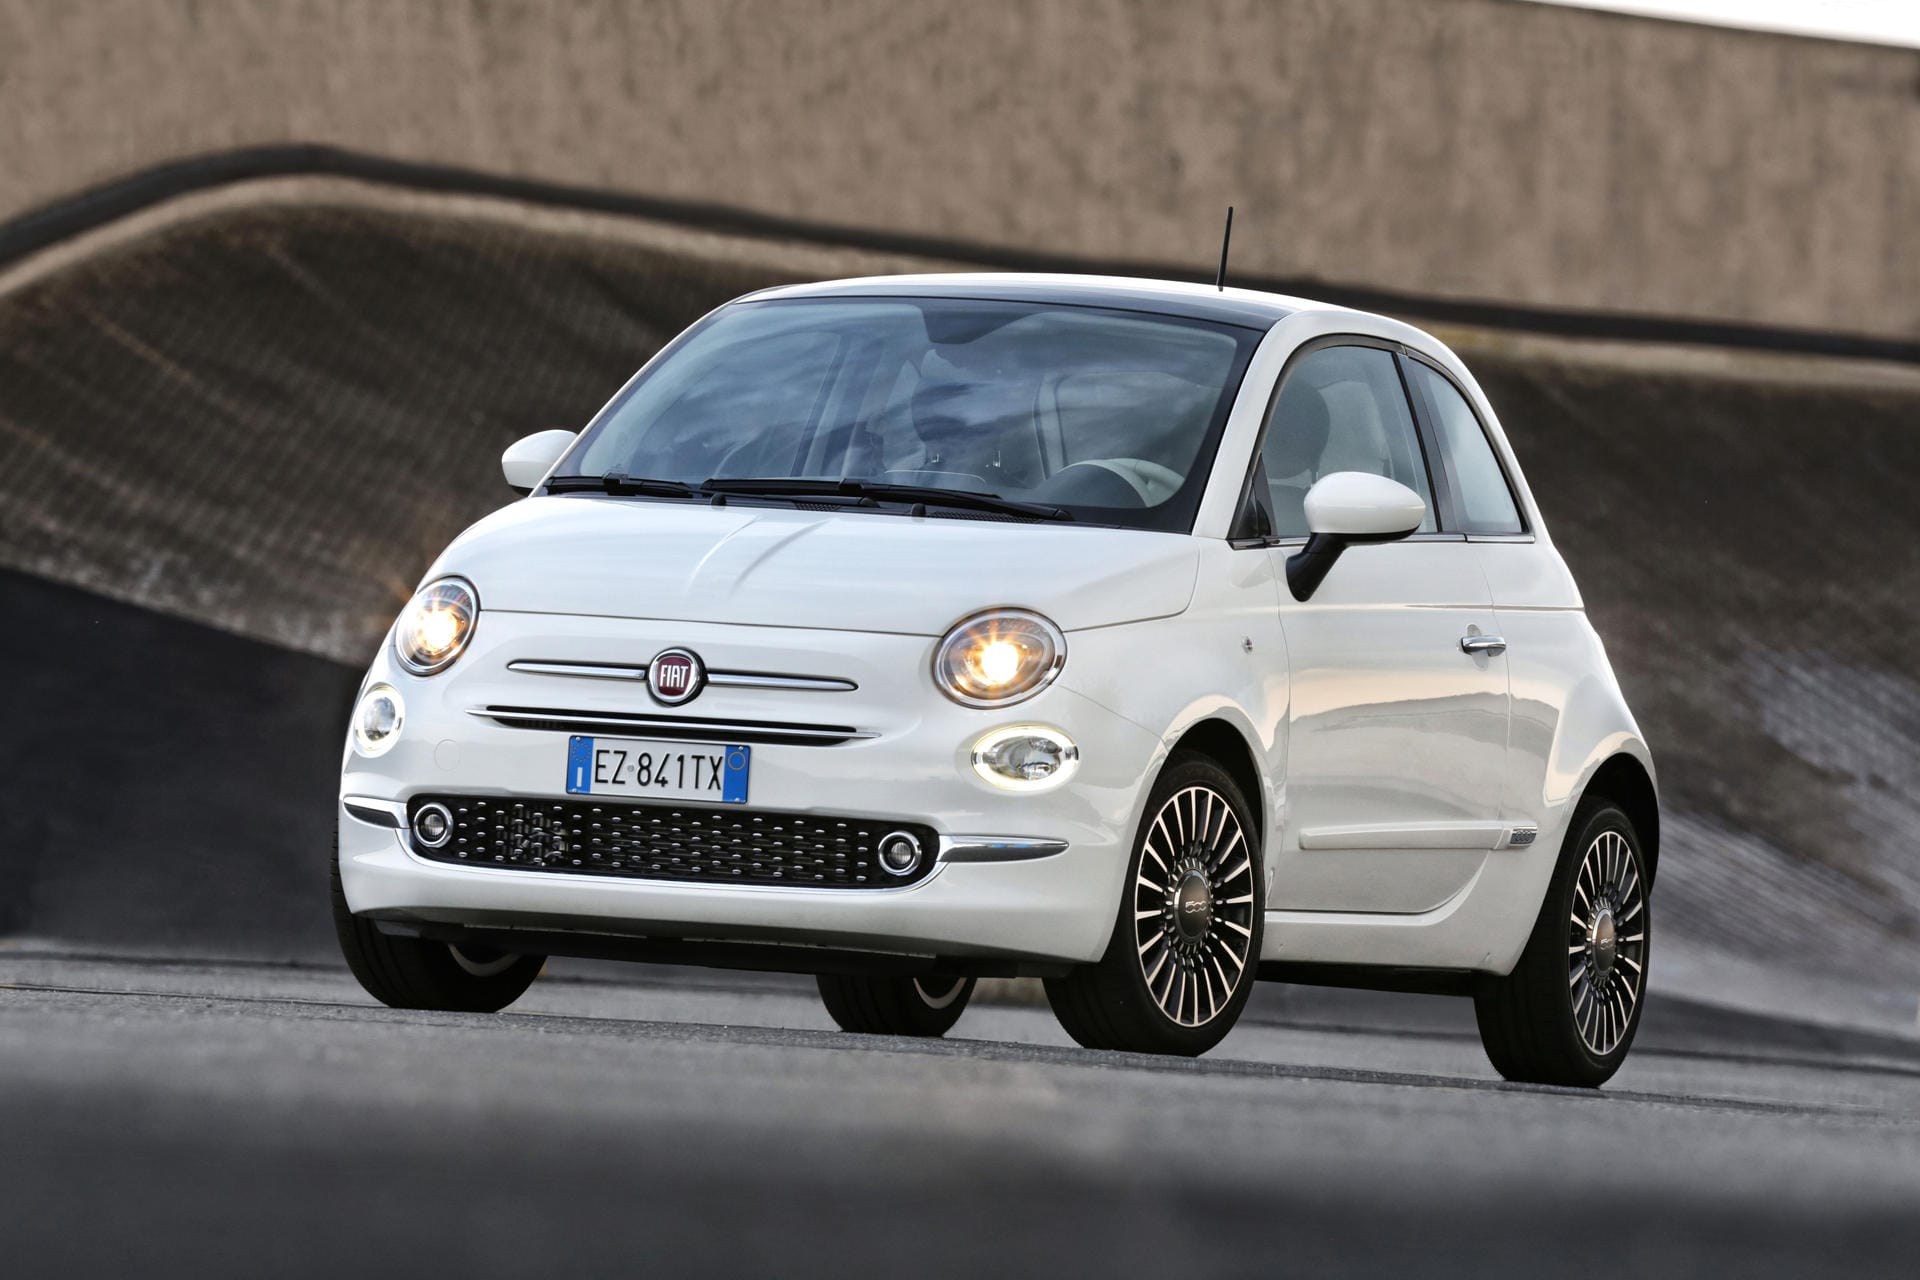 Fiat hat die Modellreihe 500 konsequent ausgebaut. Das zahlt sich aus: 33.907 Neuzulassungen konnten verbucht werden.